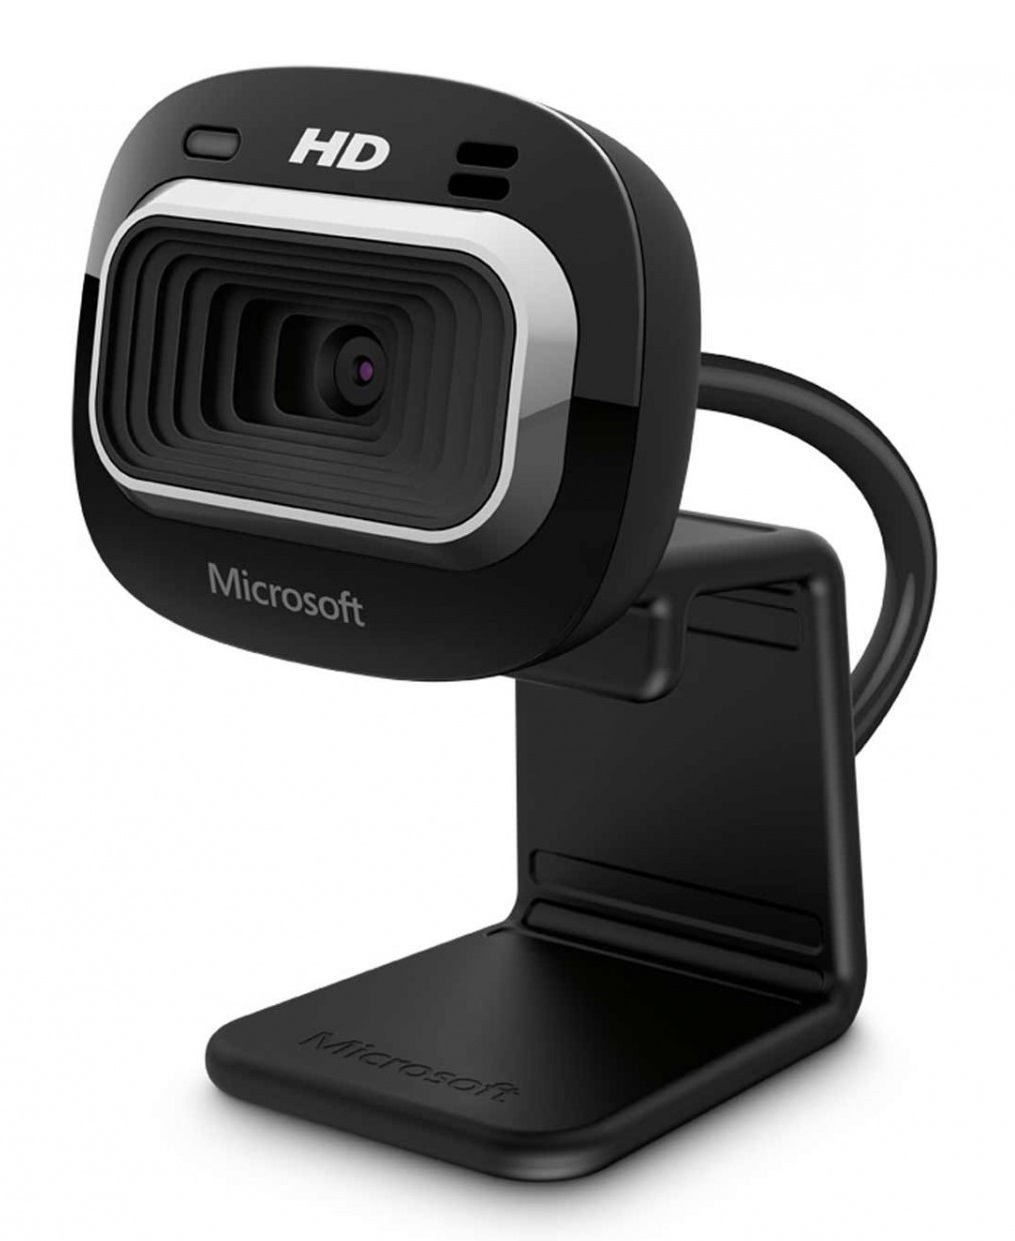 Microsoft T3H-00011 / Camara LifeCam HD-3000 | 2306 - Camara para Video Conferencia certificada para Skype con función de grabación panorámica tipo cine, Resolución 720p HD Video Chat, 720p Grabacion de Video, Pantalla Ancha. Garantía de 3 Años